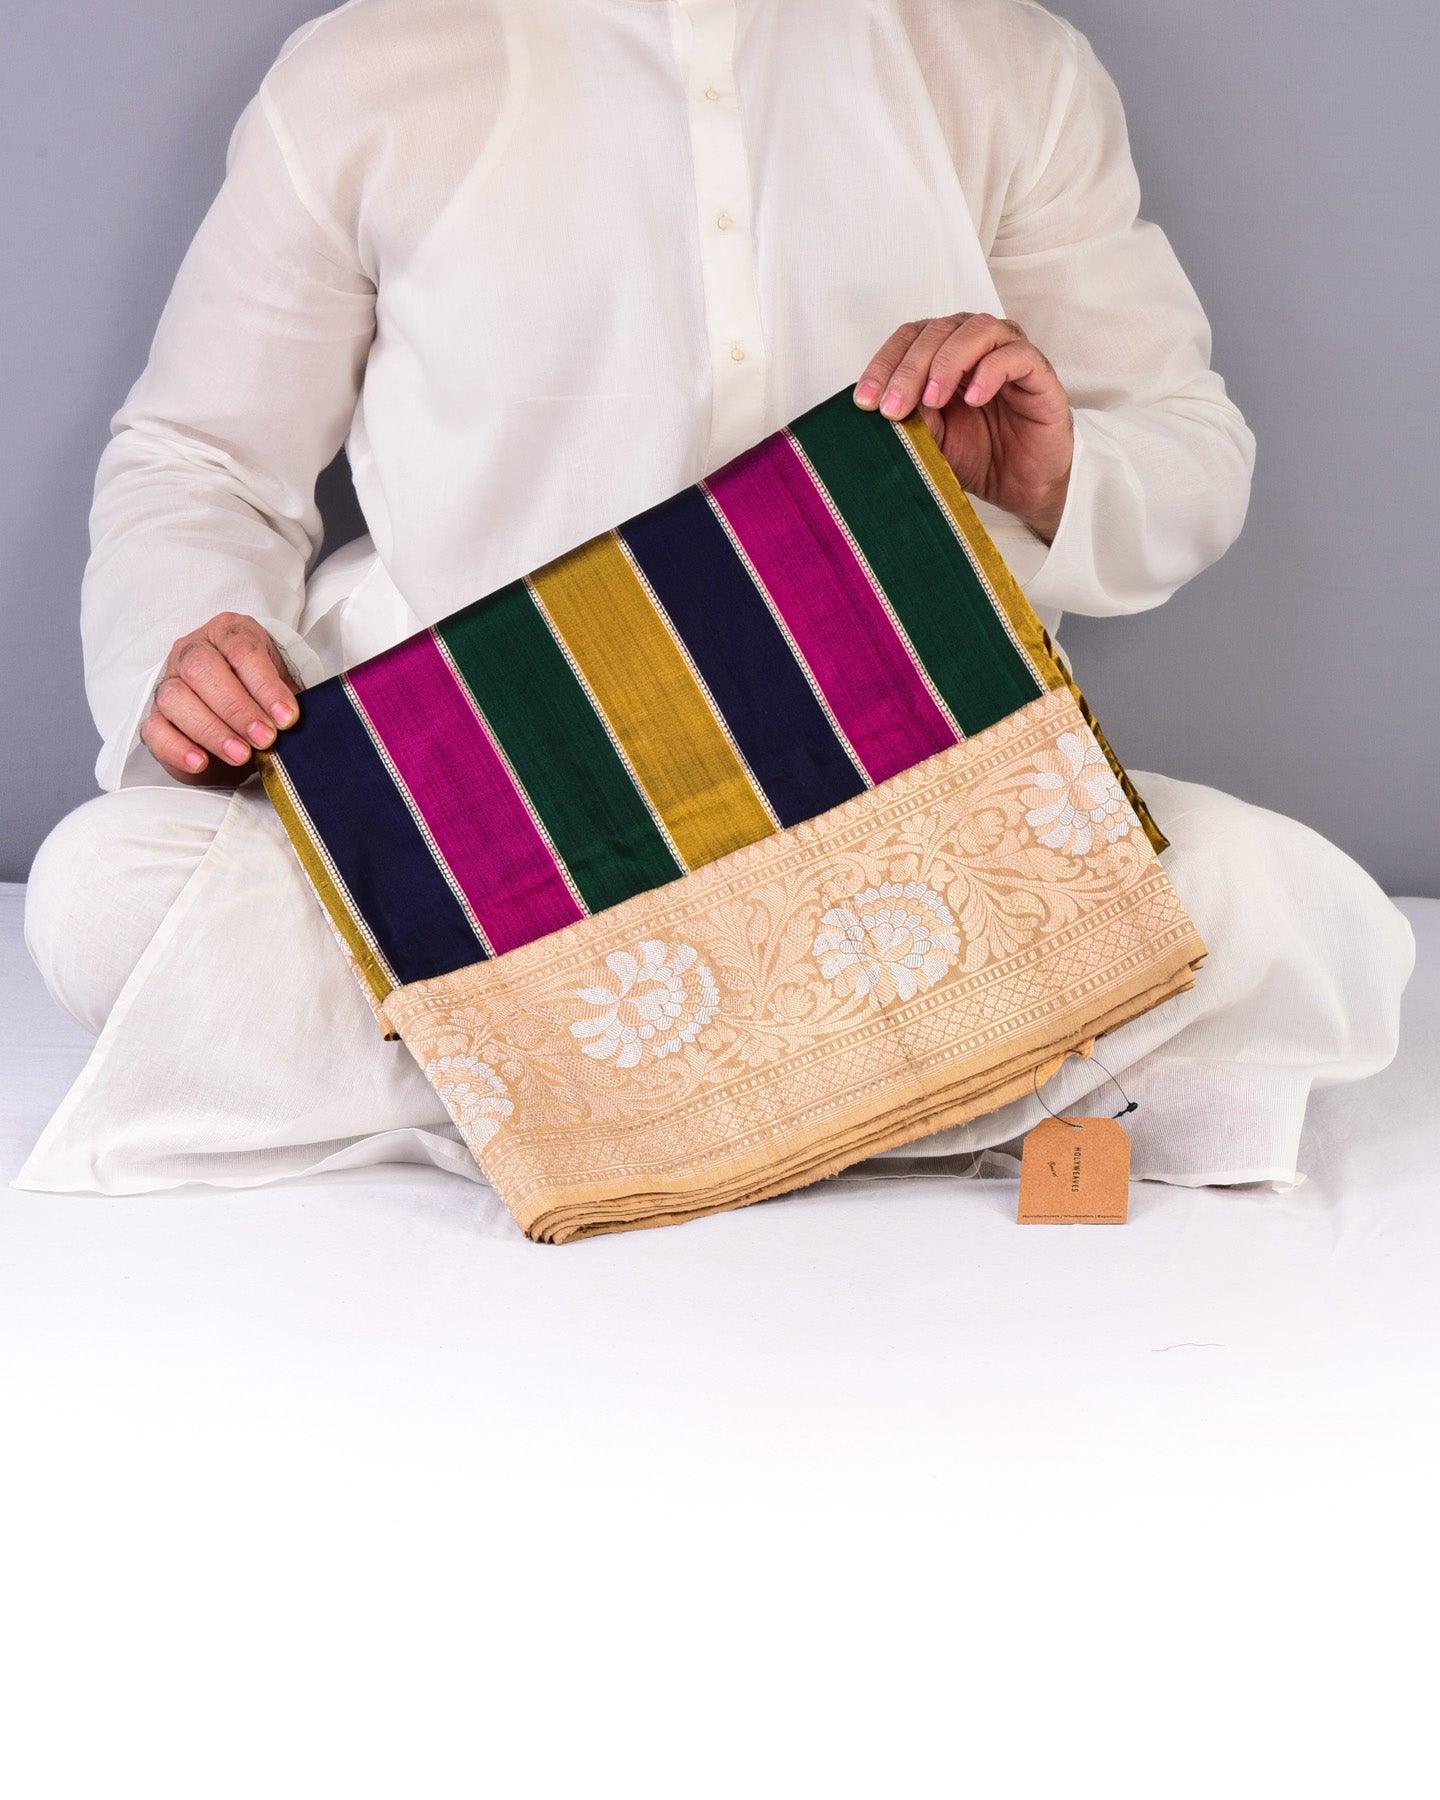 Deep Multi-color Rangkaat Banarasi Kadhuan Brocade Handwoven Katan Silk Saree with Tasar Brocade Border Pallu - By HolyWeaves, Benares